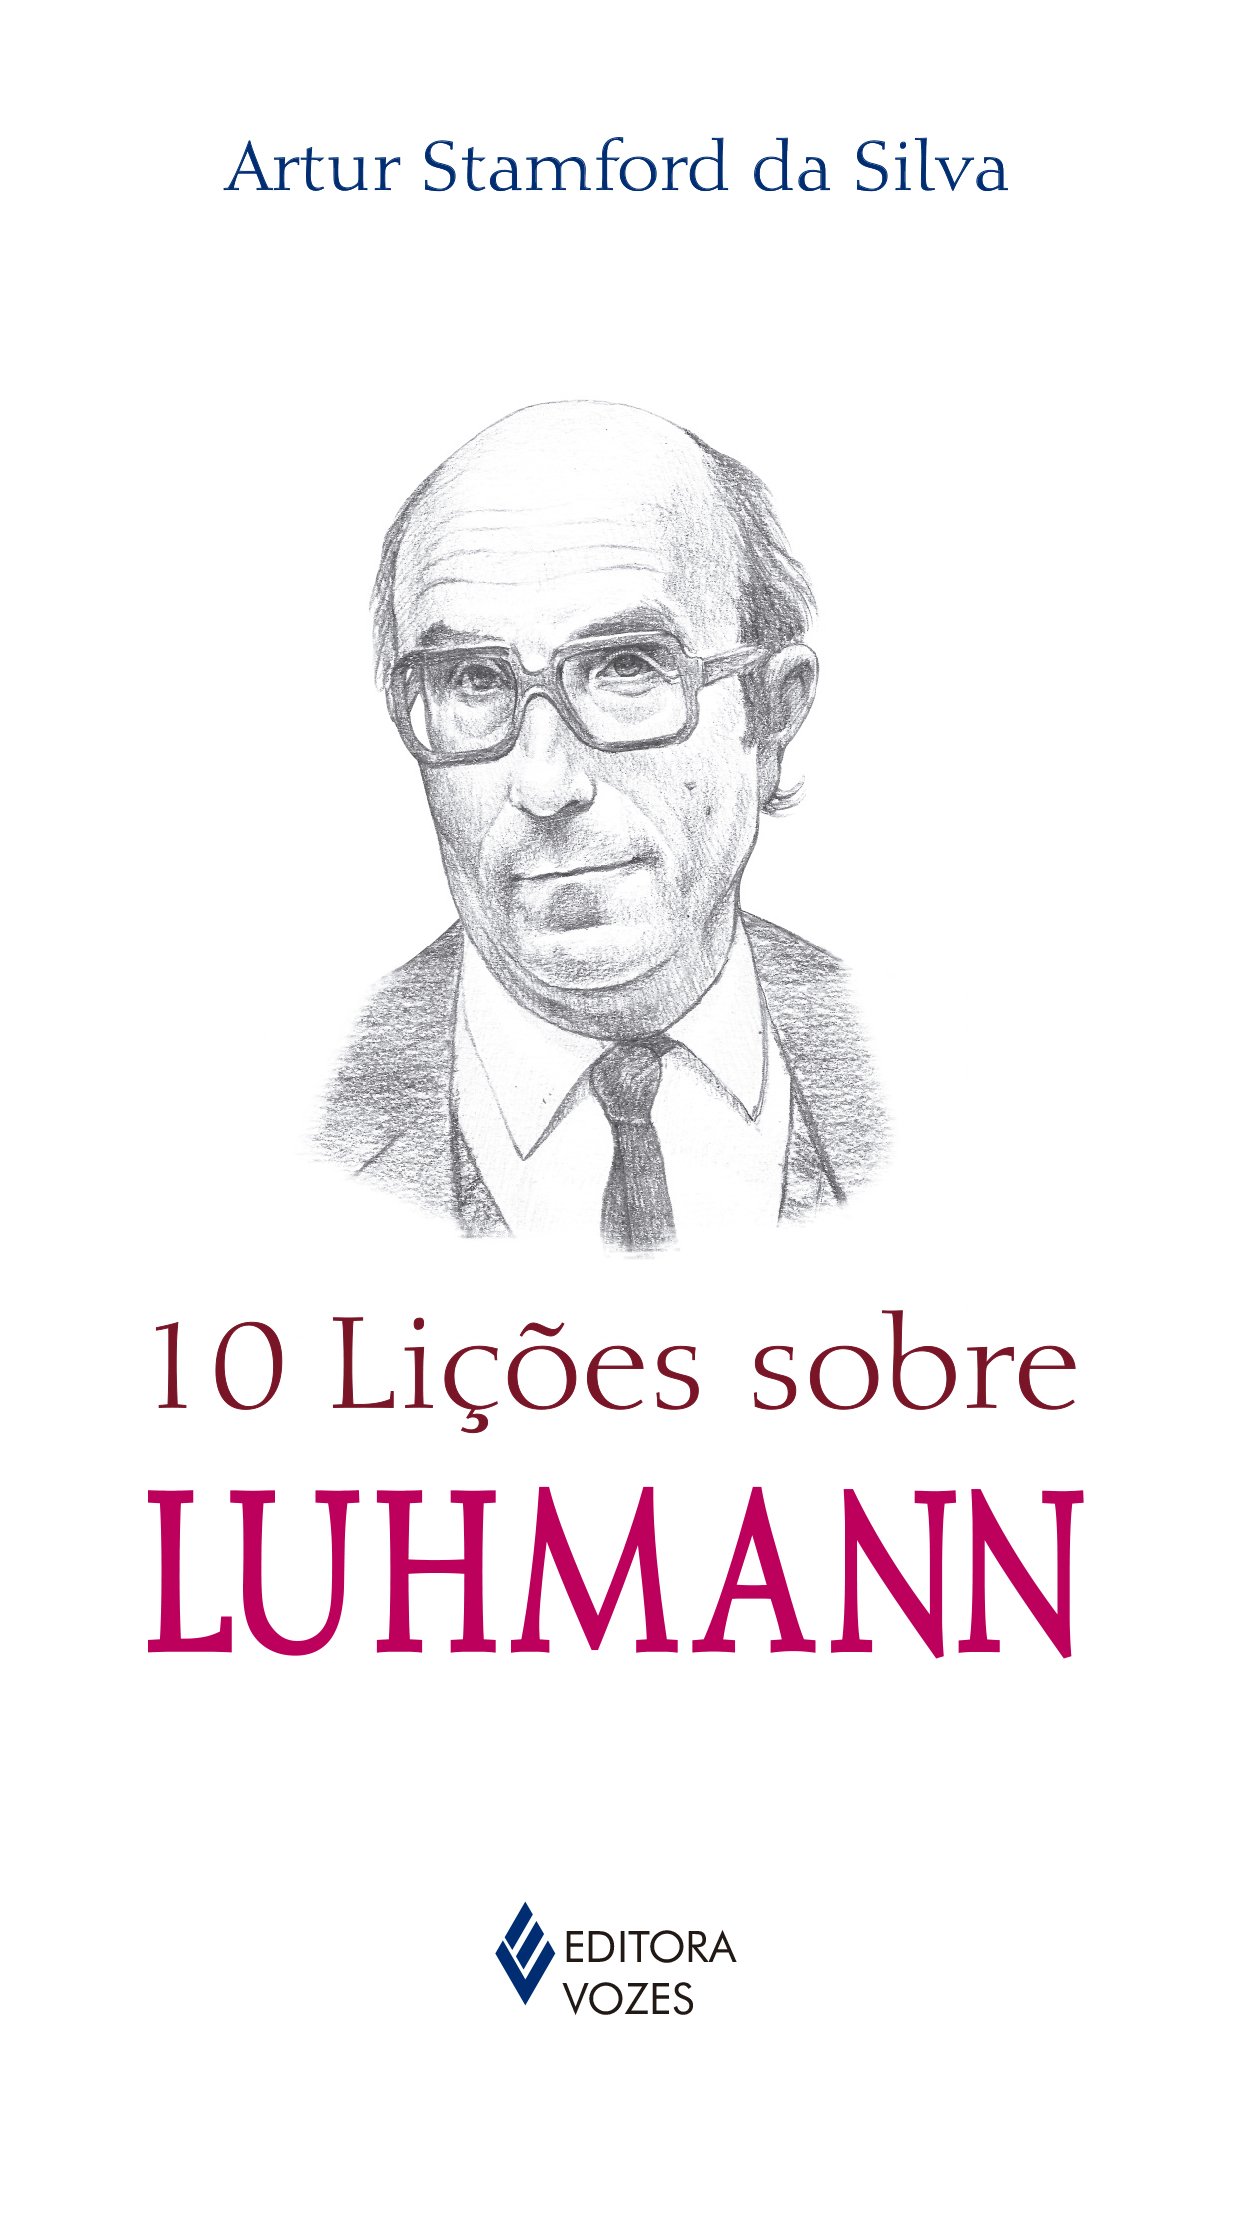 10 lições sobre Luhmann